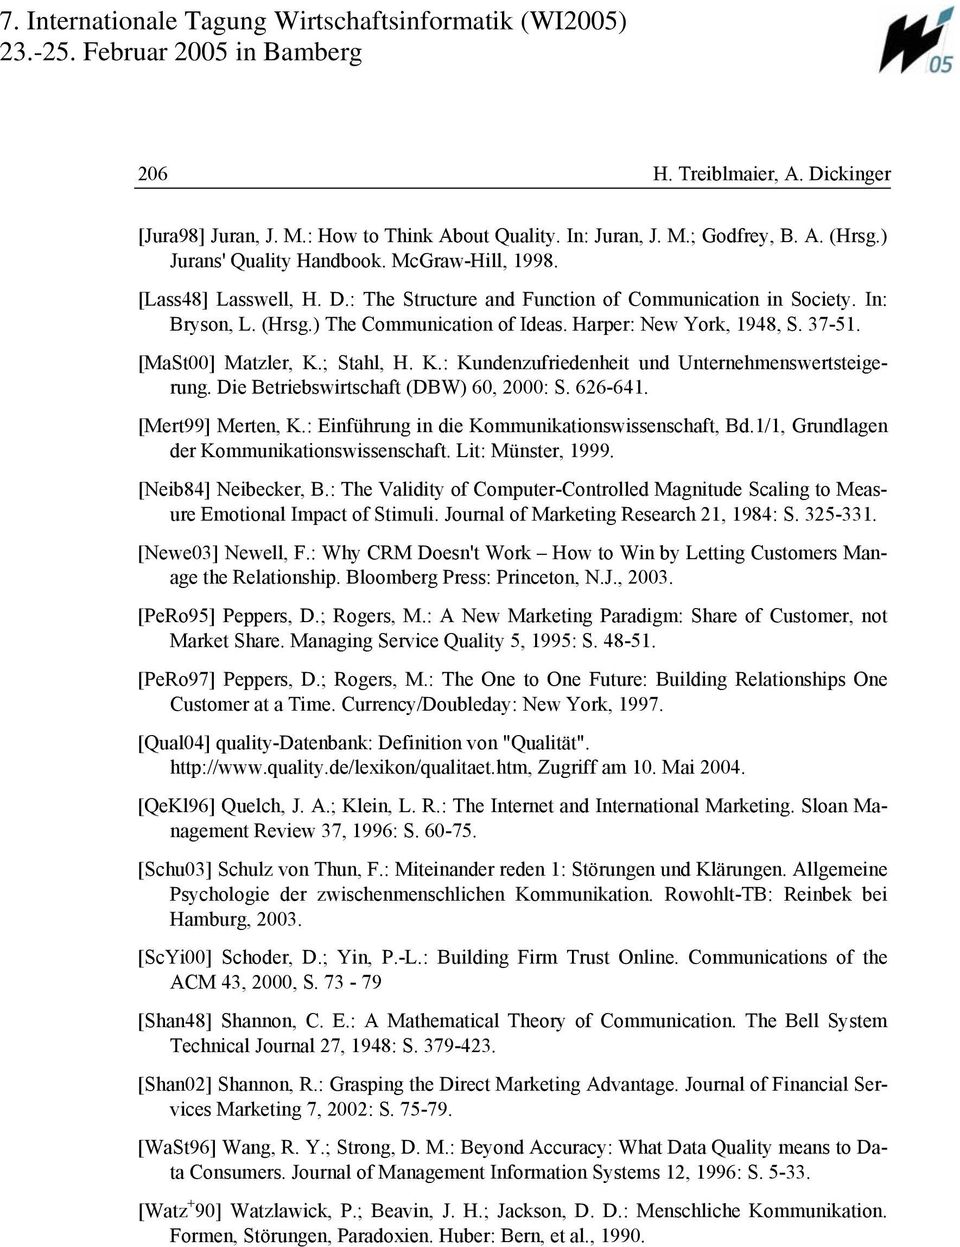 Die Betriebswirtschaft (DBW), : S. 626-641. [Mert99] Merten, K.: Einführung in die Kommunikationswissenschaft, Bd.1/1, Grundlagen der Kommunikationswissenschaft. Lit: Münster, 1999.